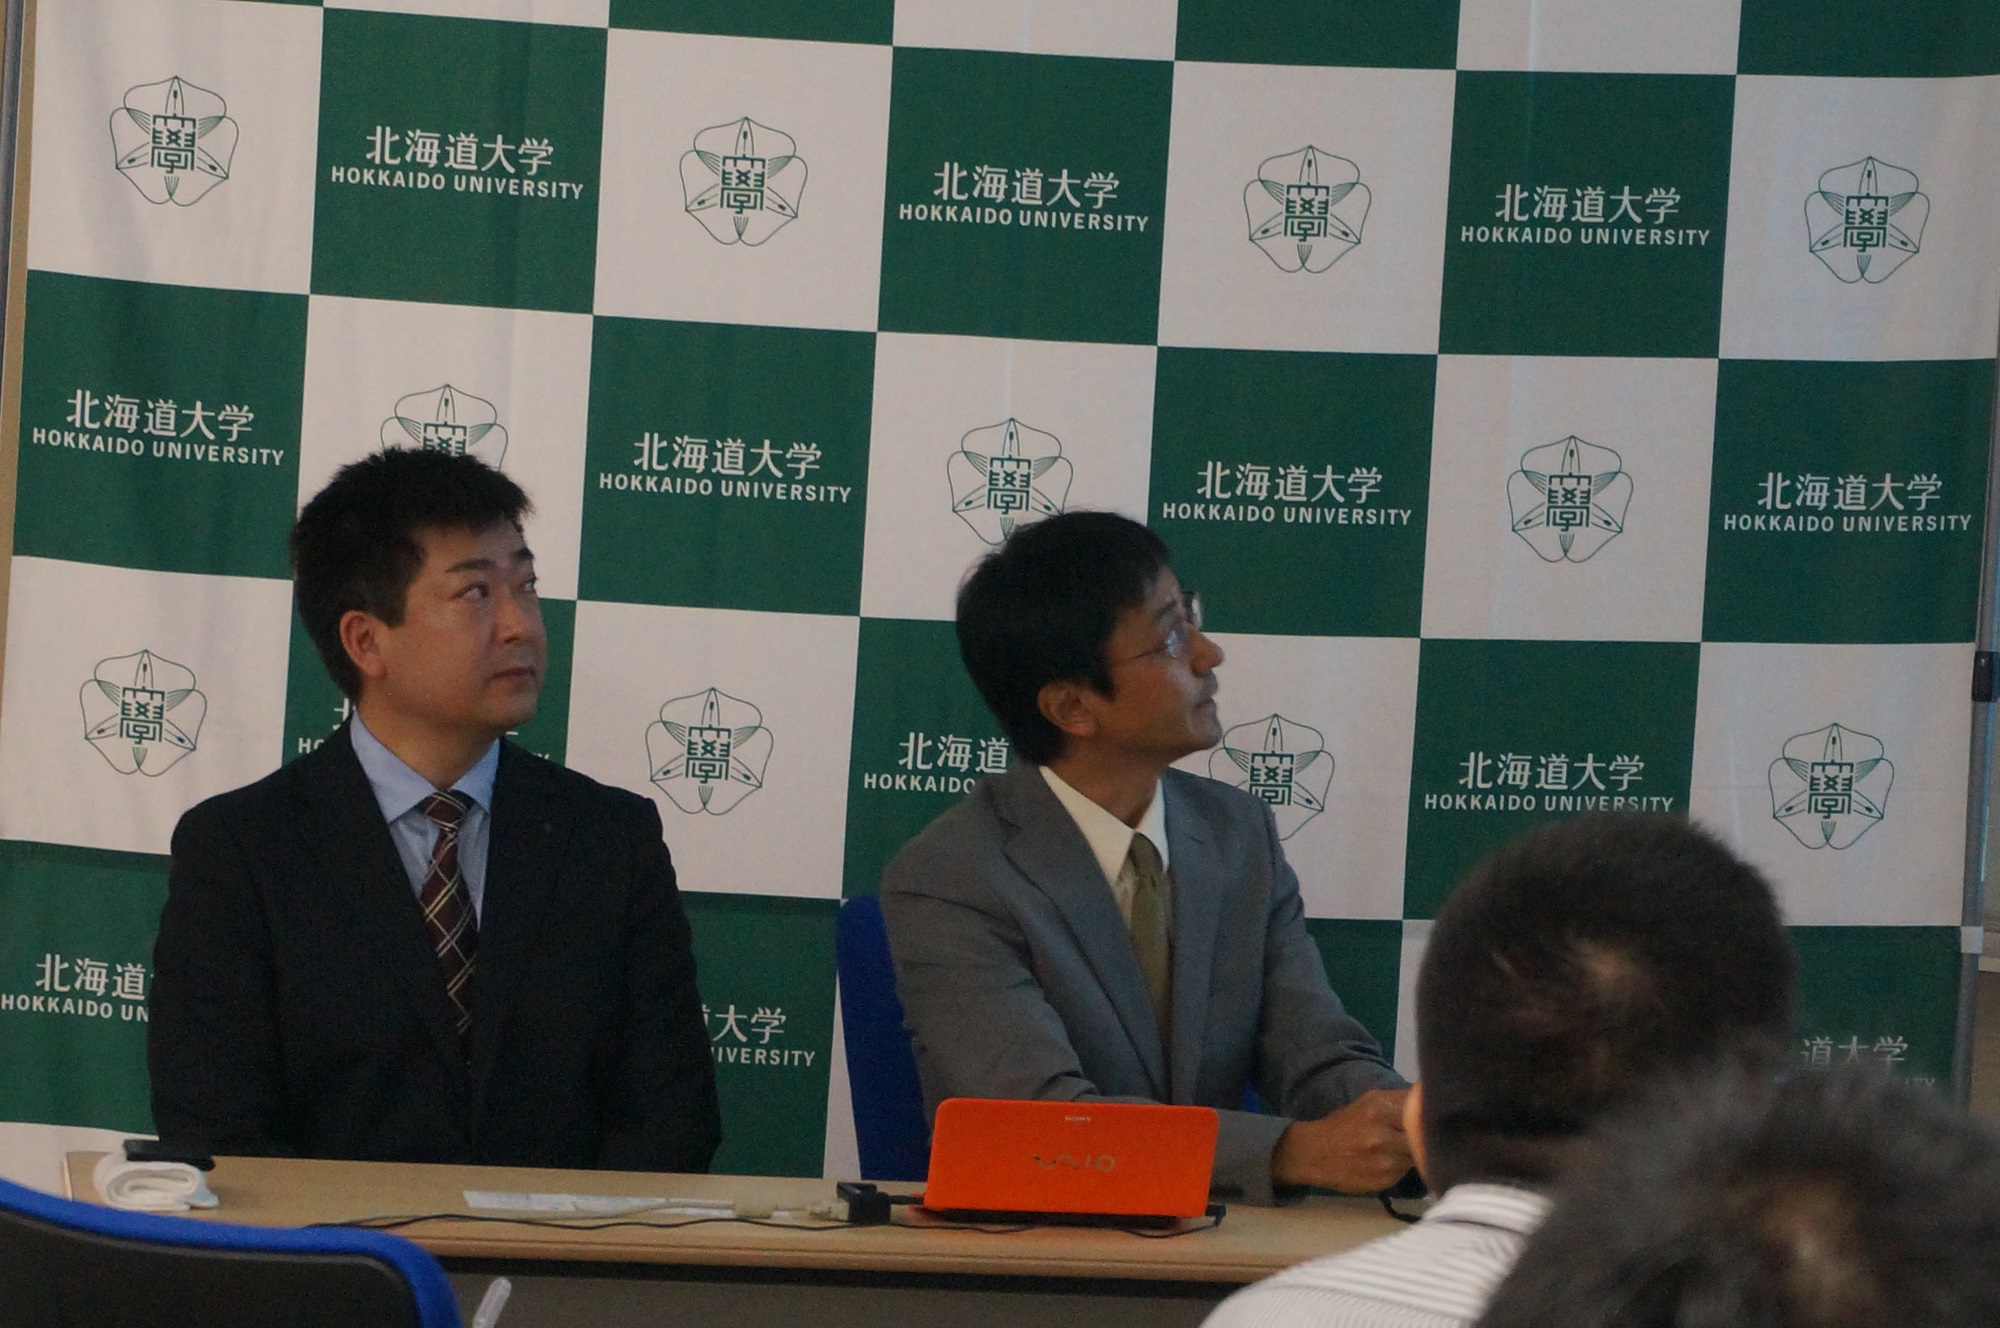 9月12日、工学研究院での記者会見で説明する田島准教授（右）